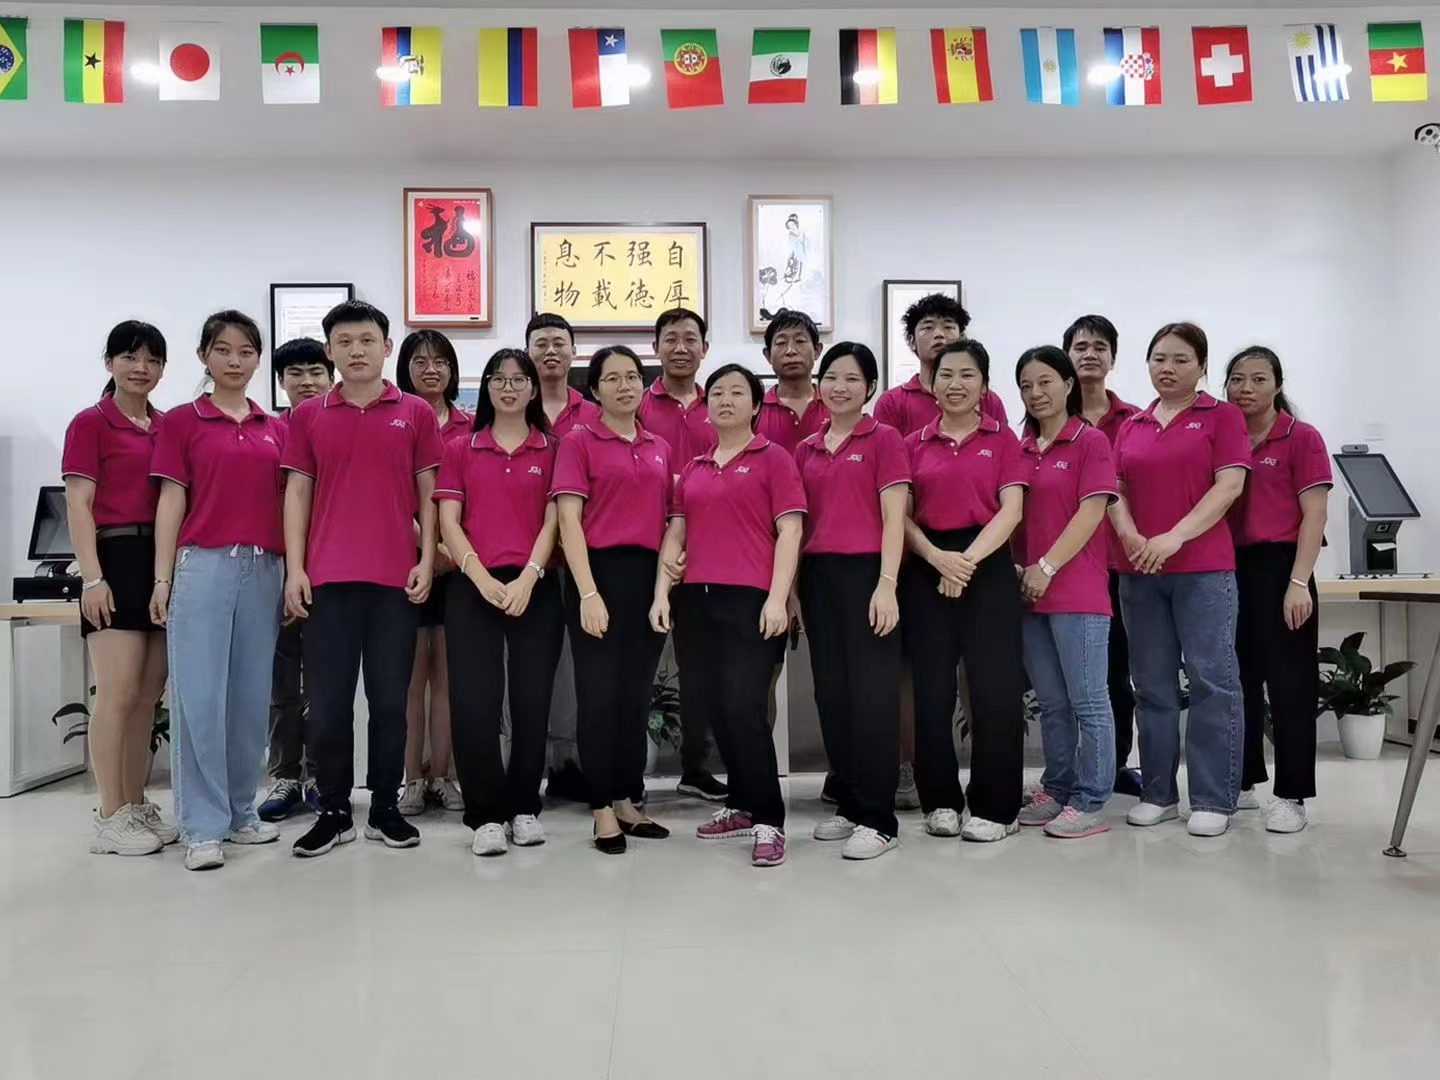 Shenzhen Sui Yi Touch Computer Co., Ltd ले कर्मचारीहरु टेबल टेनिस खेल राख्छ